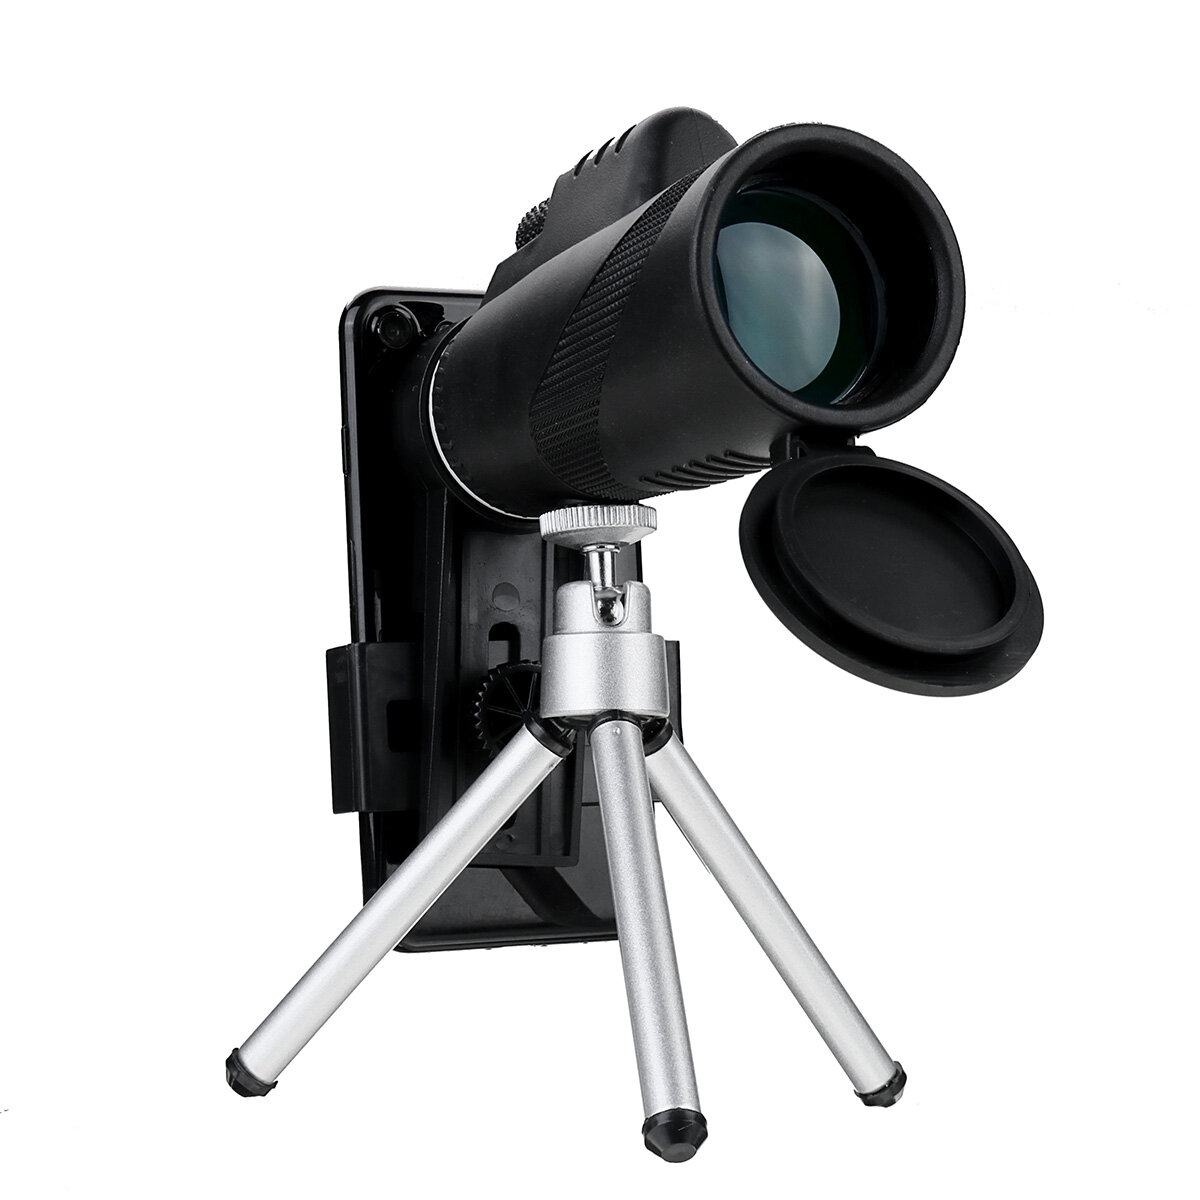 Zestaw teleskopu telefonicznego 80X dla dorosłych Monokular HD z statywem + adapterem telefonu do obserwacji ptaków, kempingu i podróży.